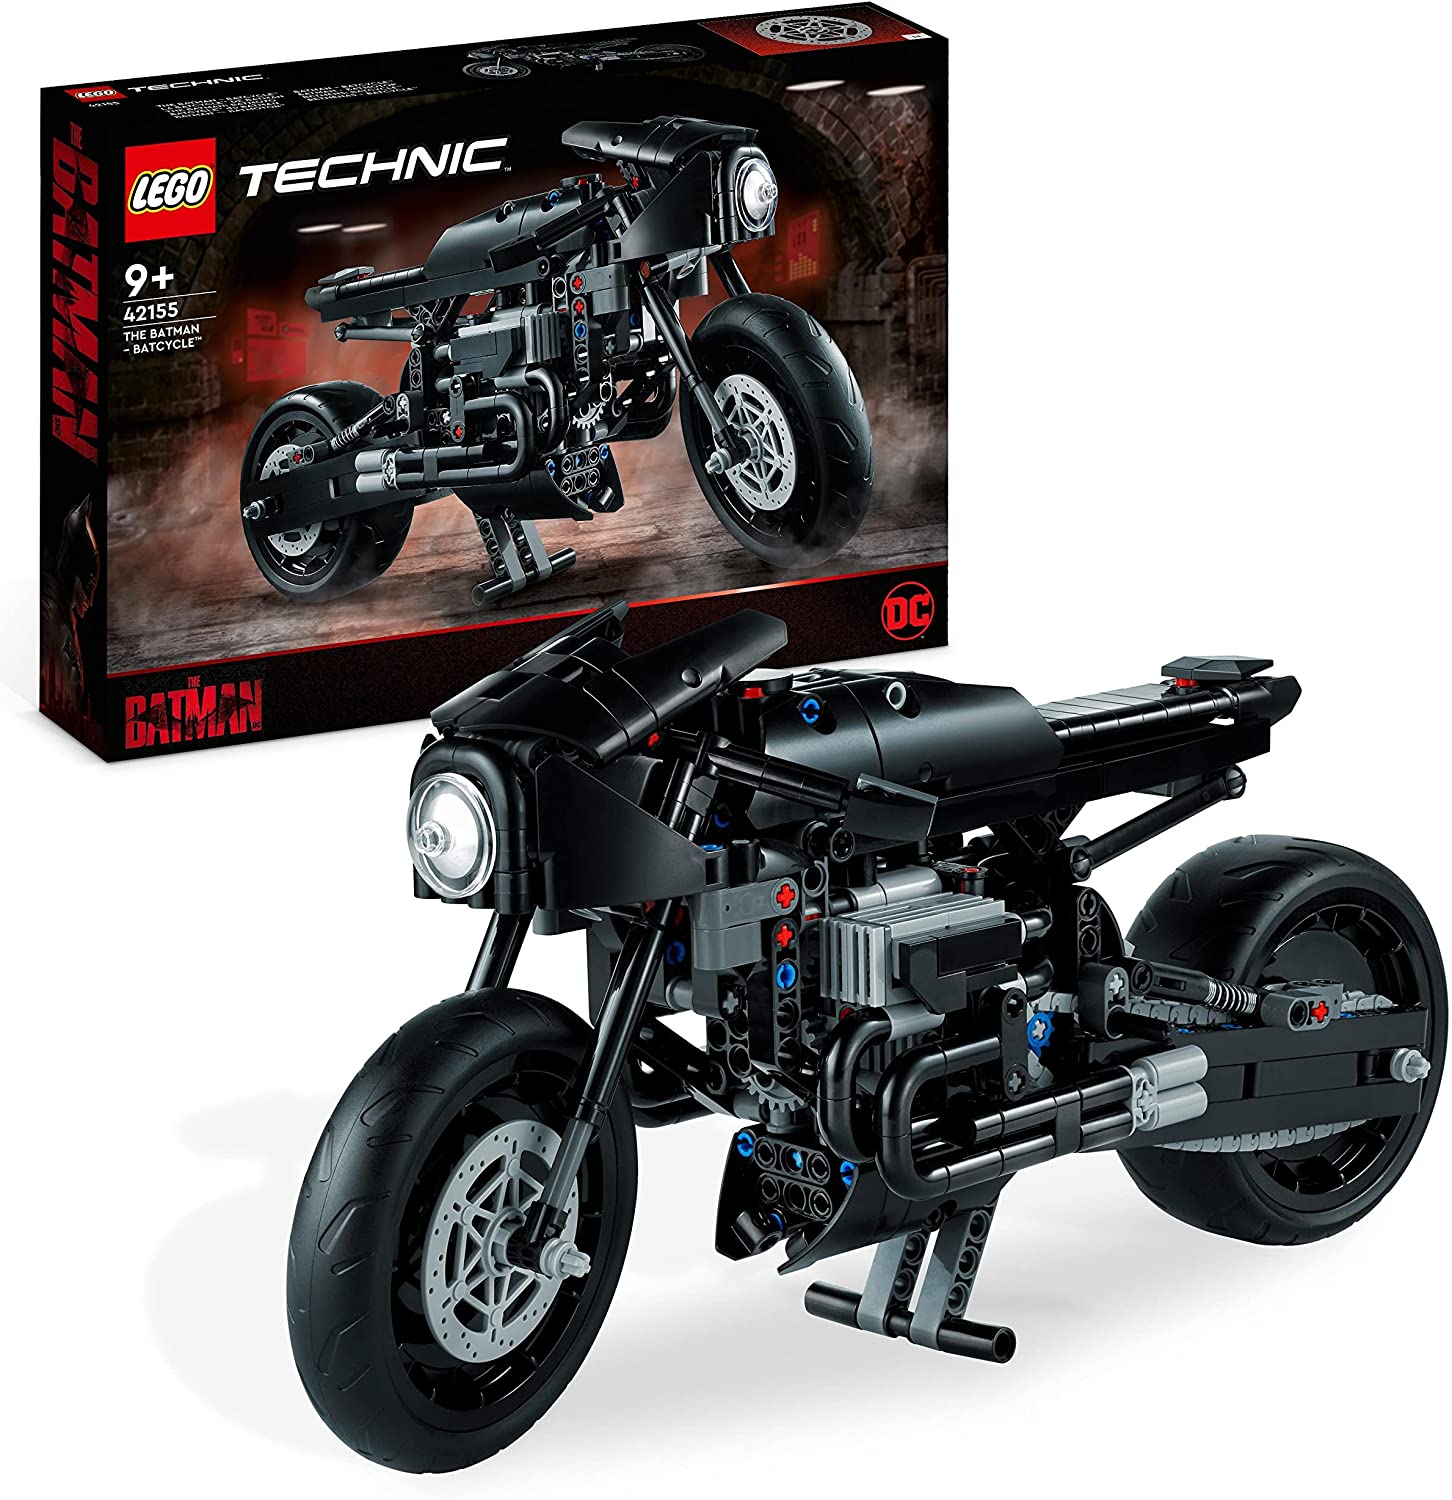 LEGO 42155 Technic THE BATMAN – BATCYCLE, Moto Giocattolo da Collezione,  Modellino in Scala dell Iconica Motocicletta del Supere